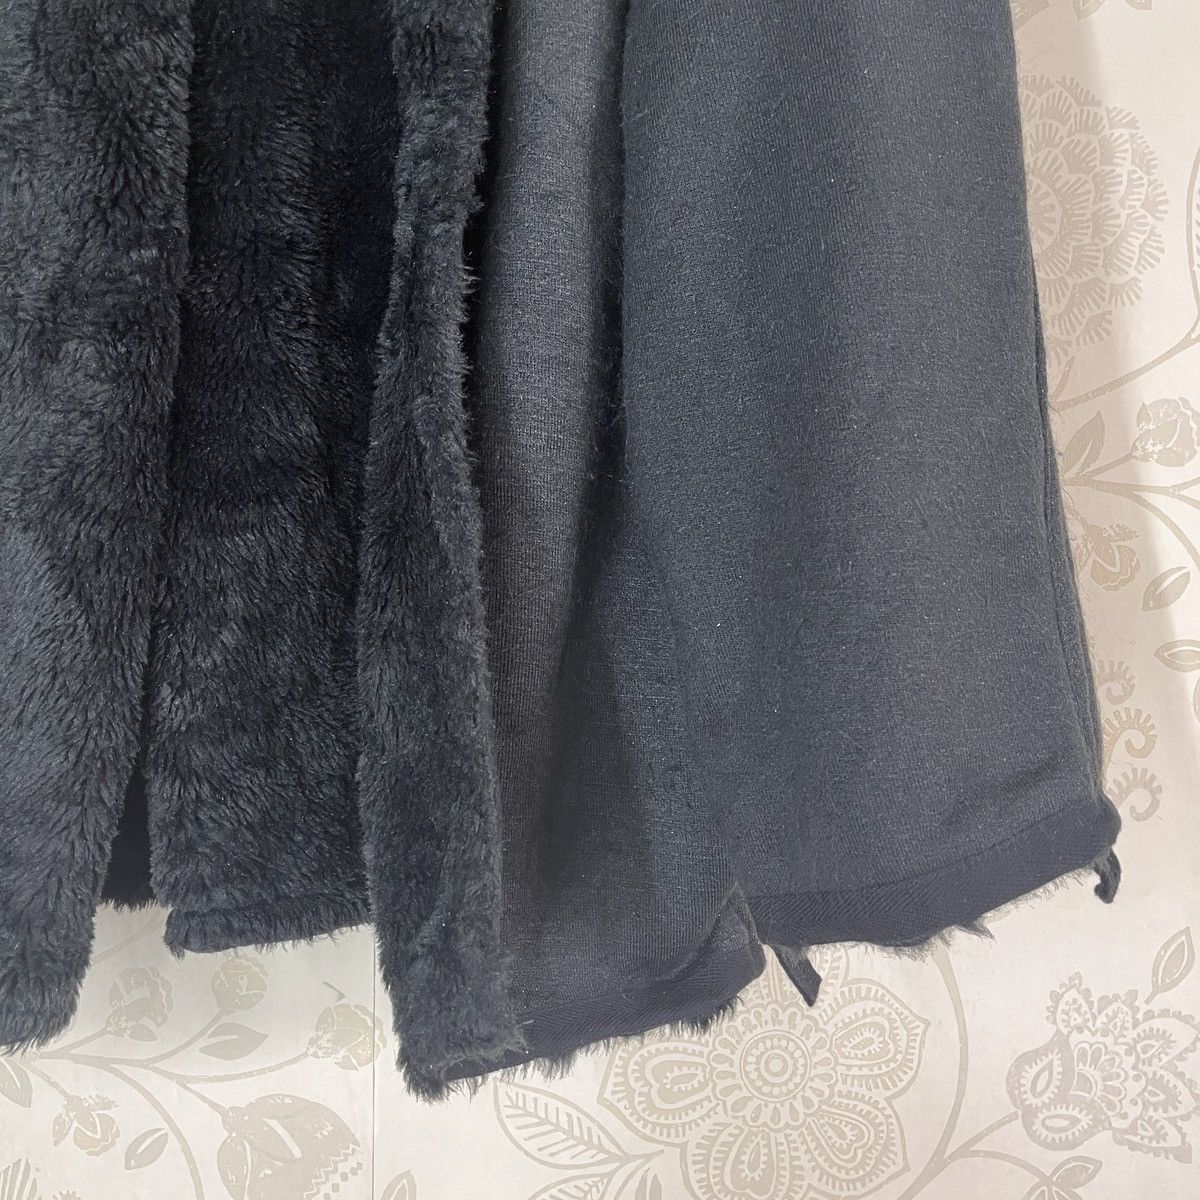 Vintage - Lux Style Black Fur PPFM Cloaks Capes - 11